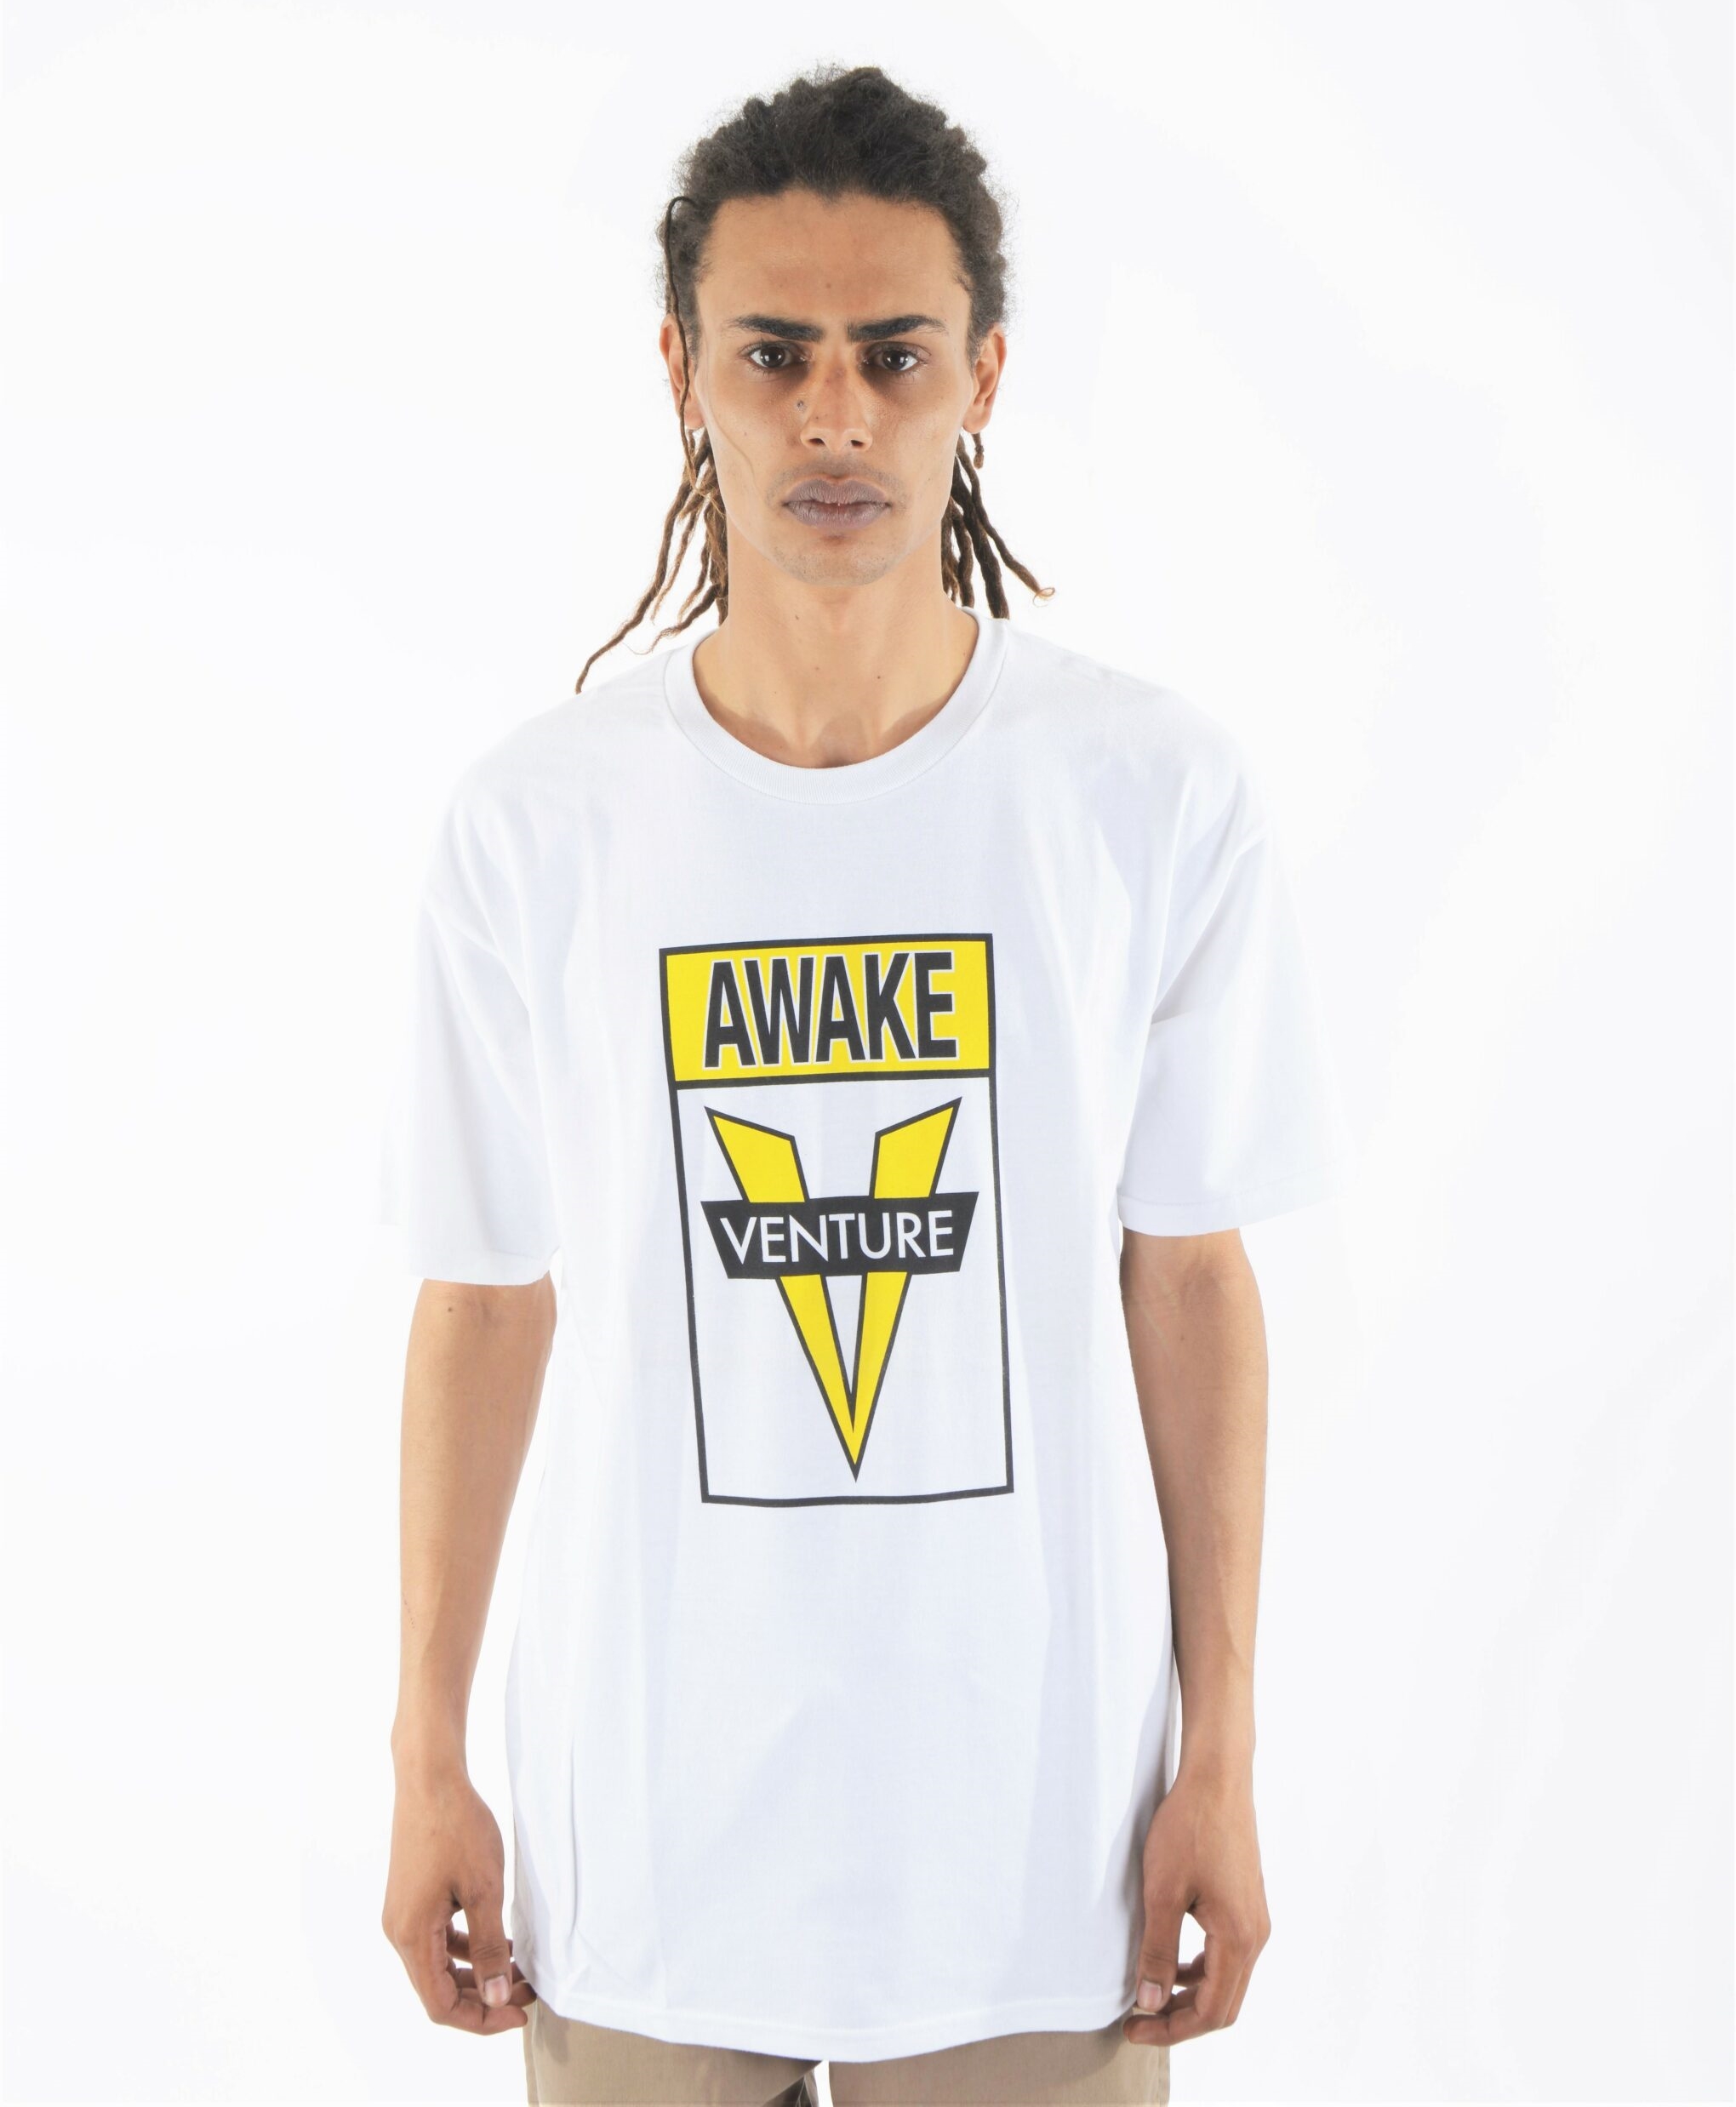 Venture Awake T Shirt White